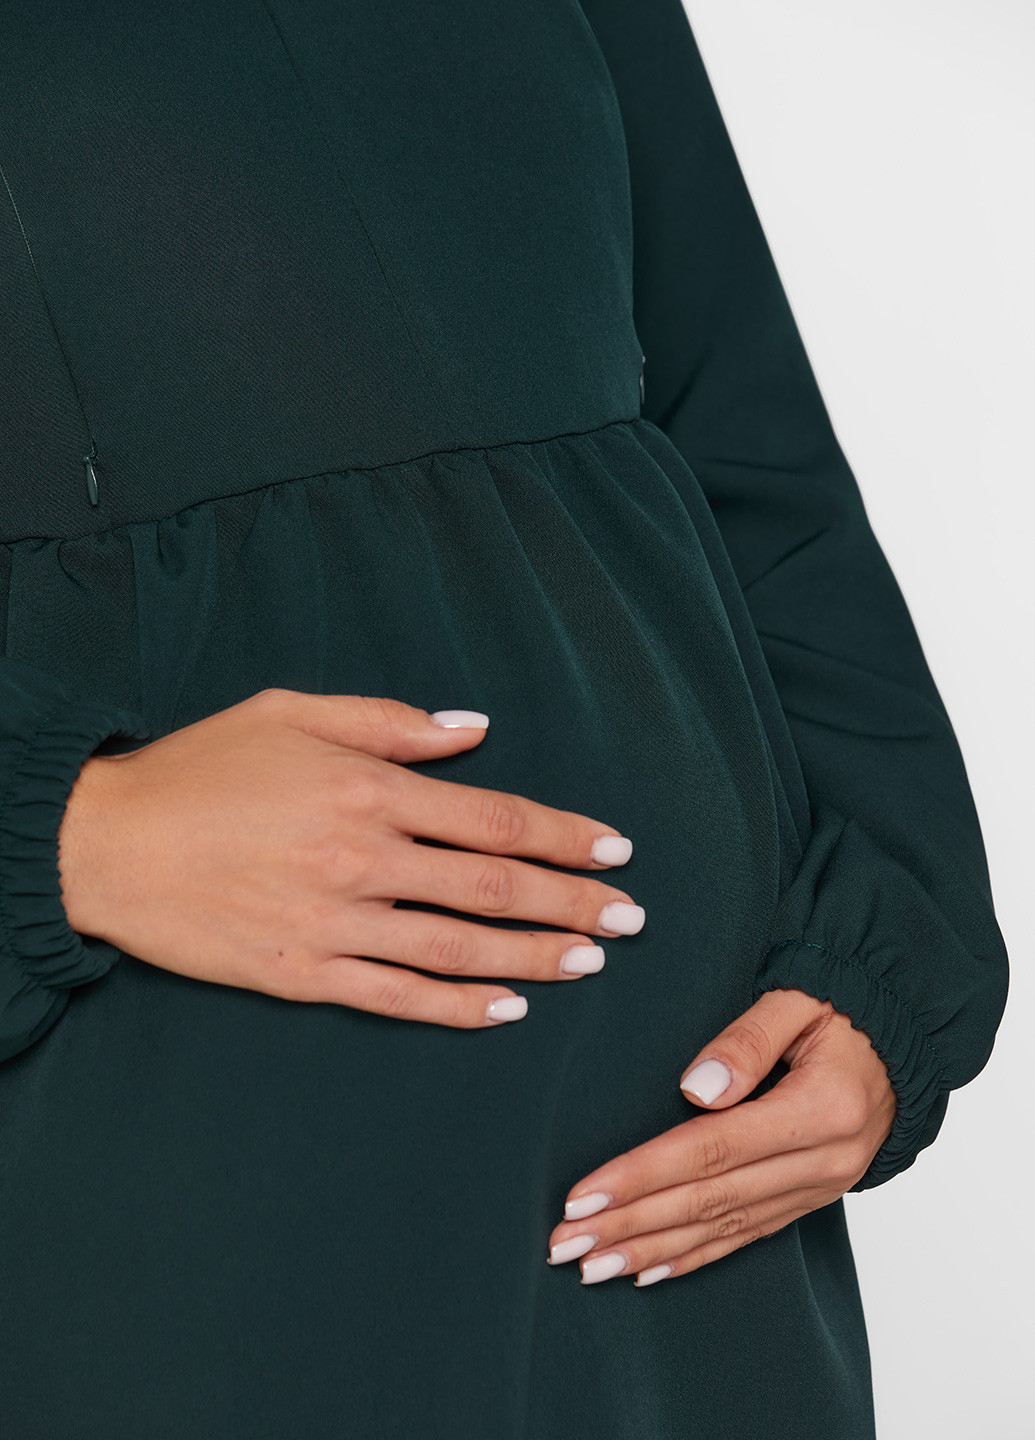 Зелена кежуал плаття для вагітних Lullababe однотонна